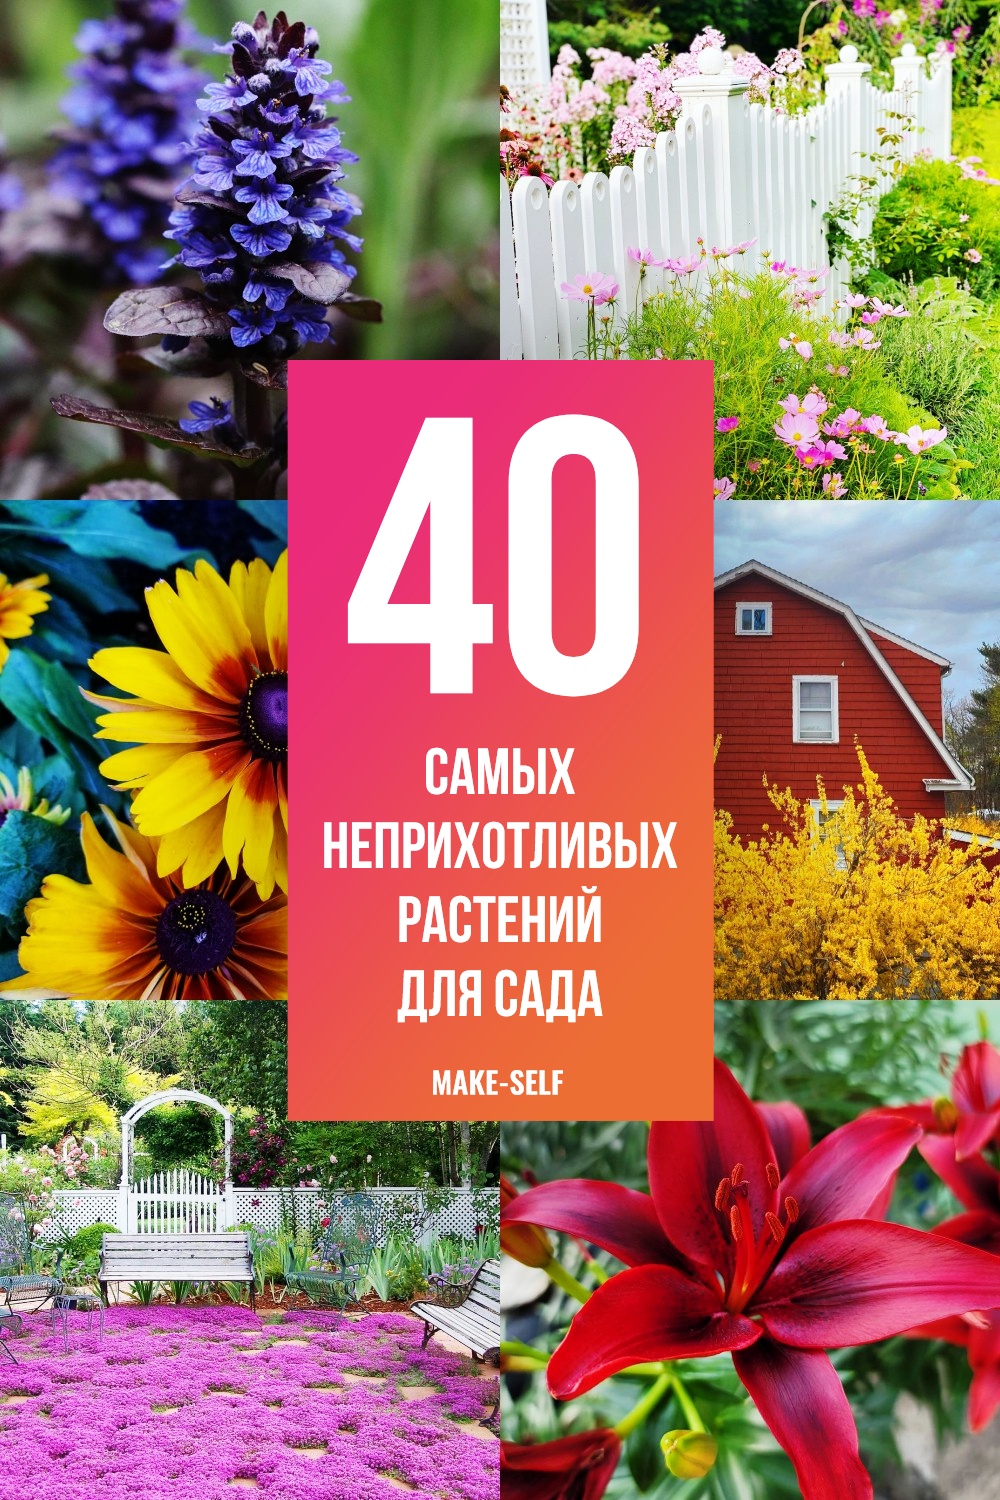 40 Самых неприхотливых растений для сада